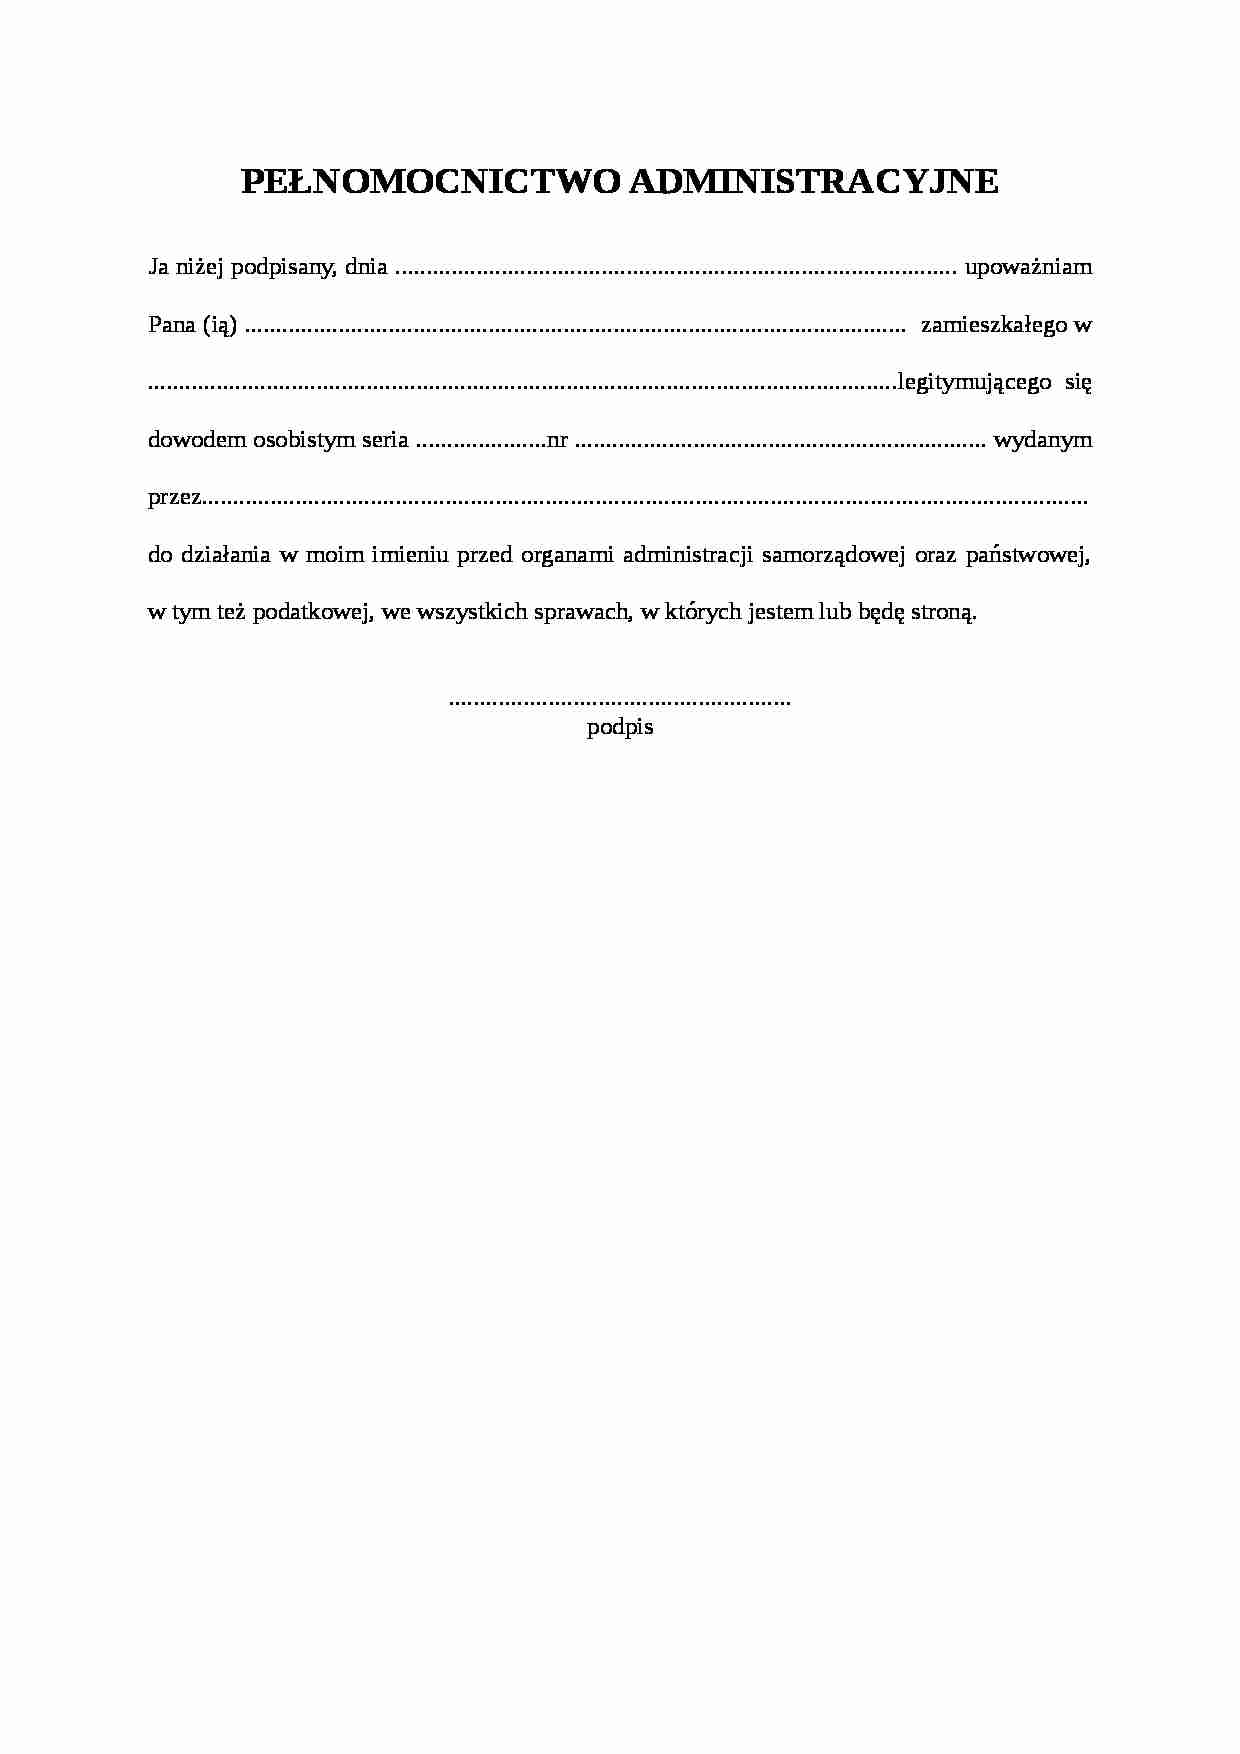 Wzór-Pełnomocnictwo administracyjne - strona 1